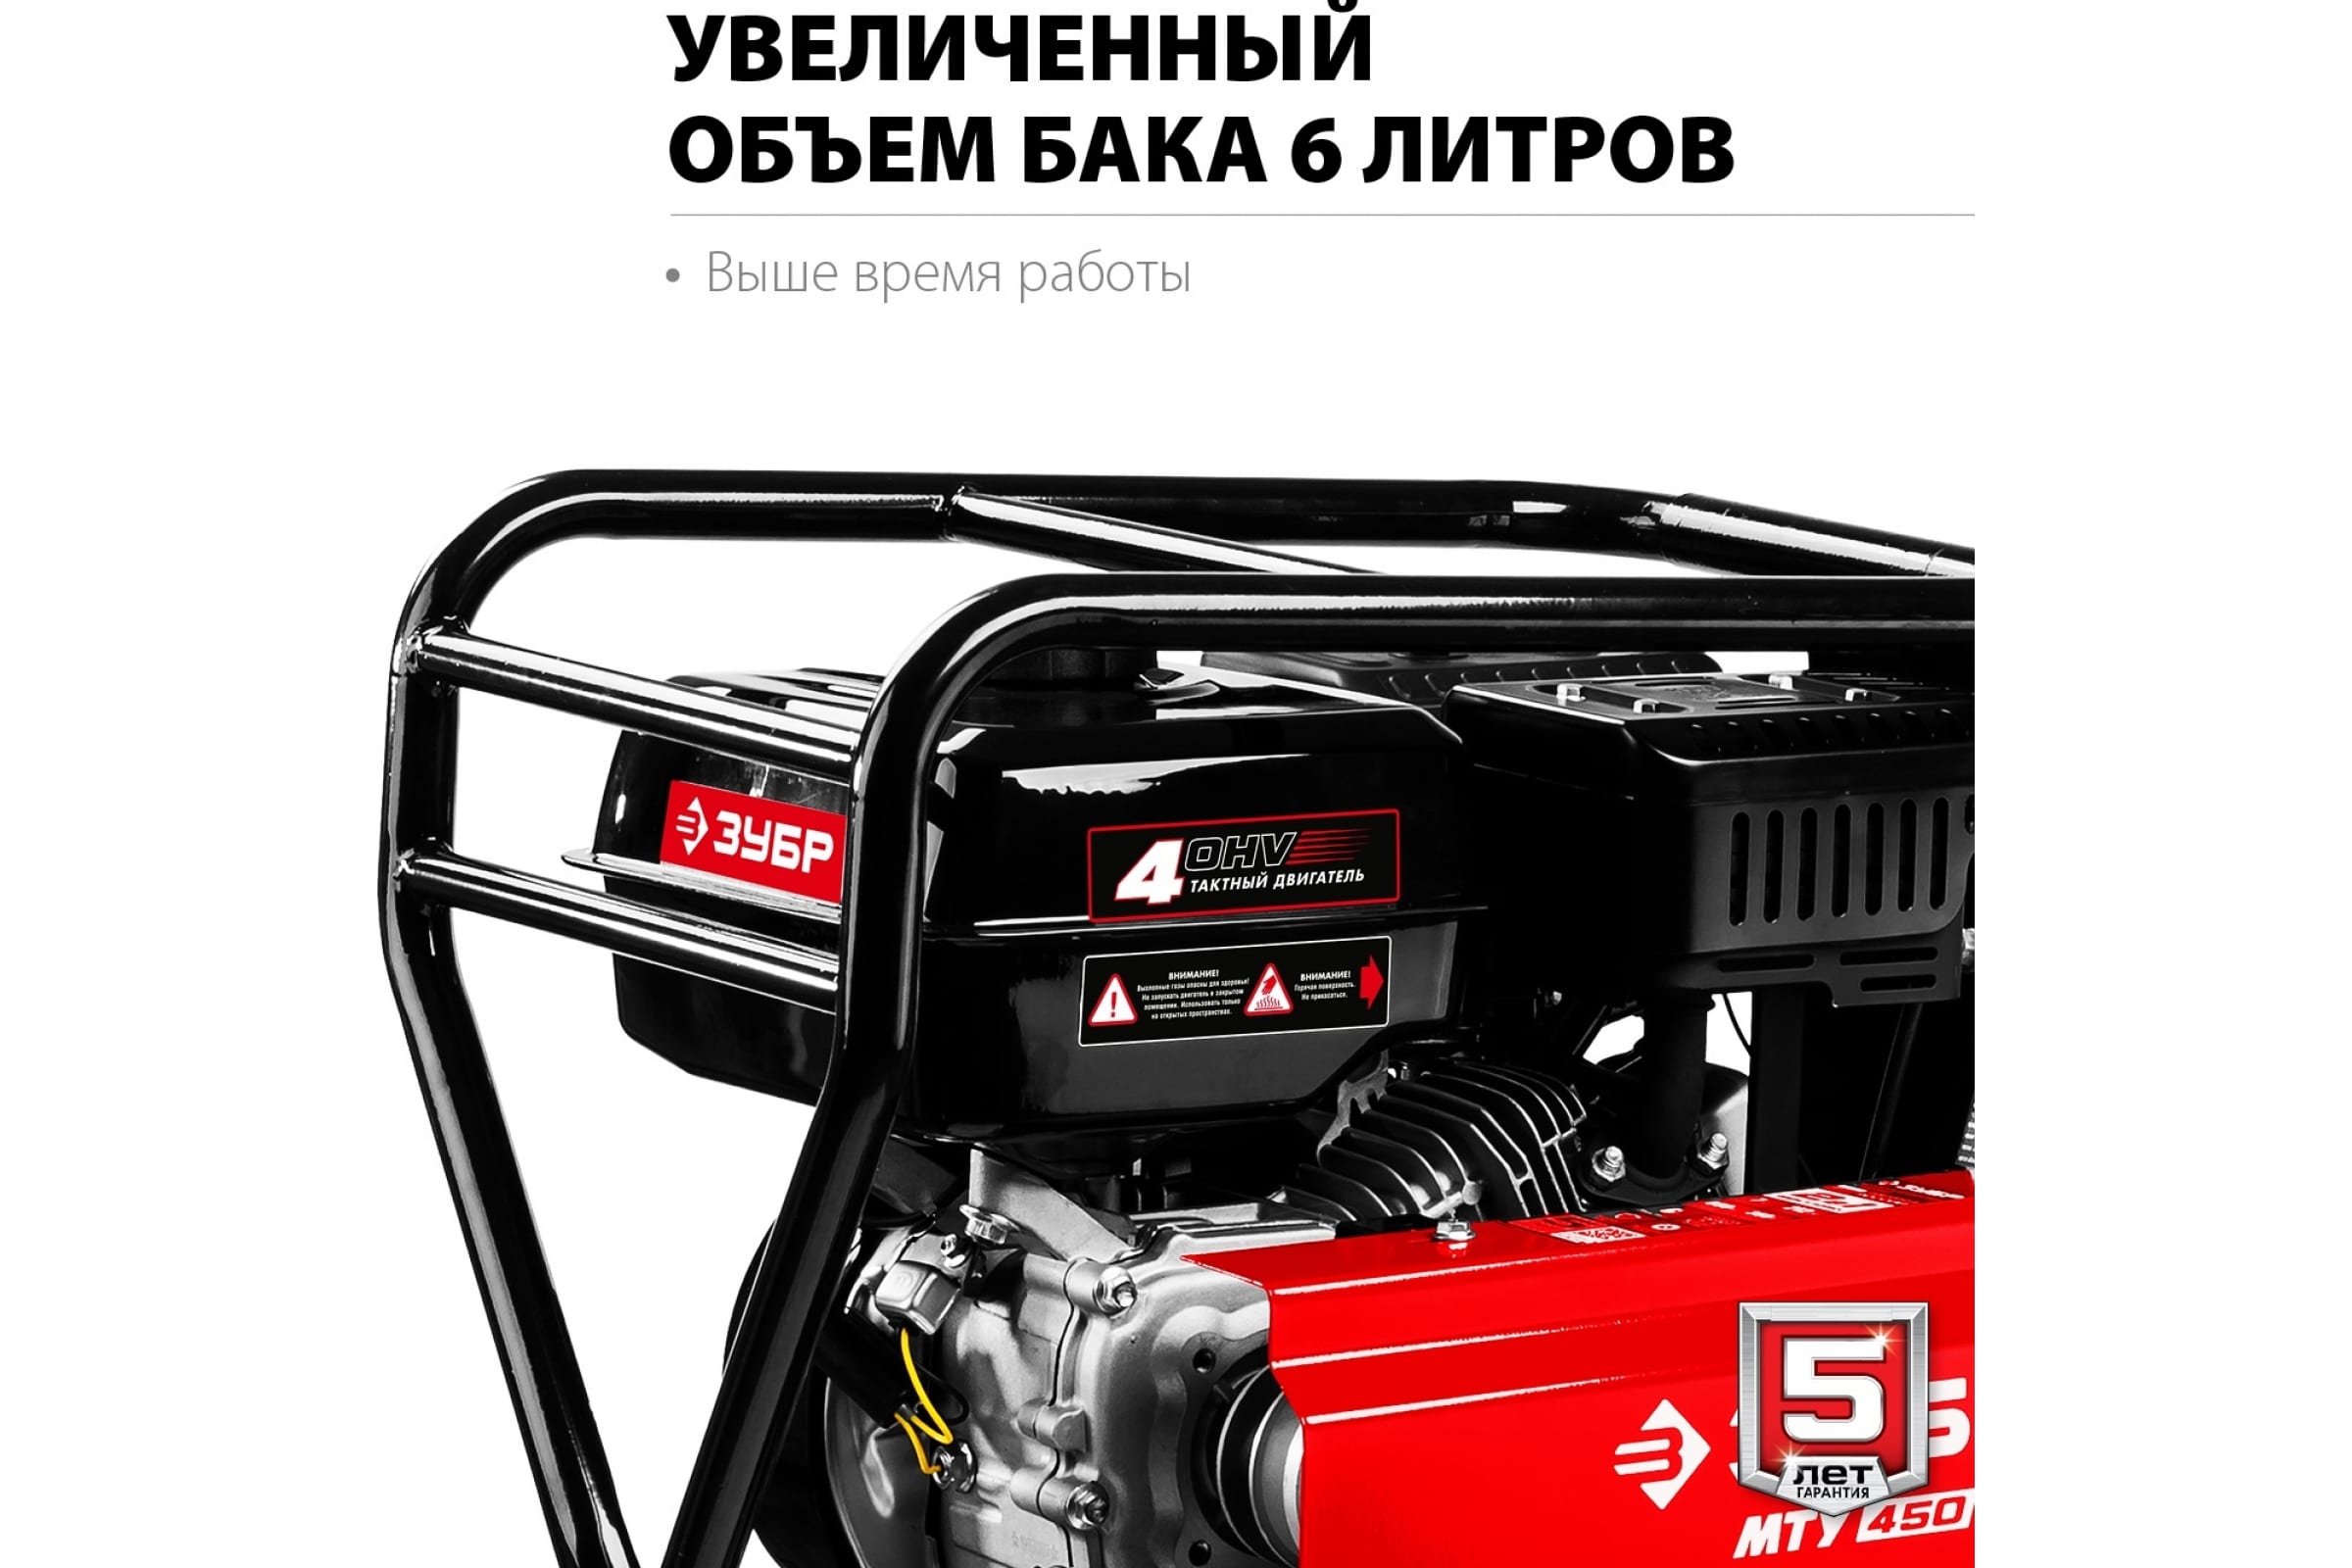  бензиновый ЗУБР МТУ-450 7 л.с.  по низкой цене  .